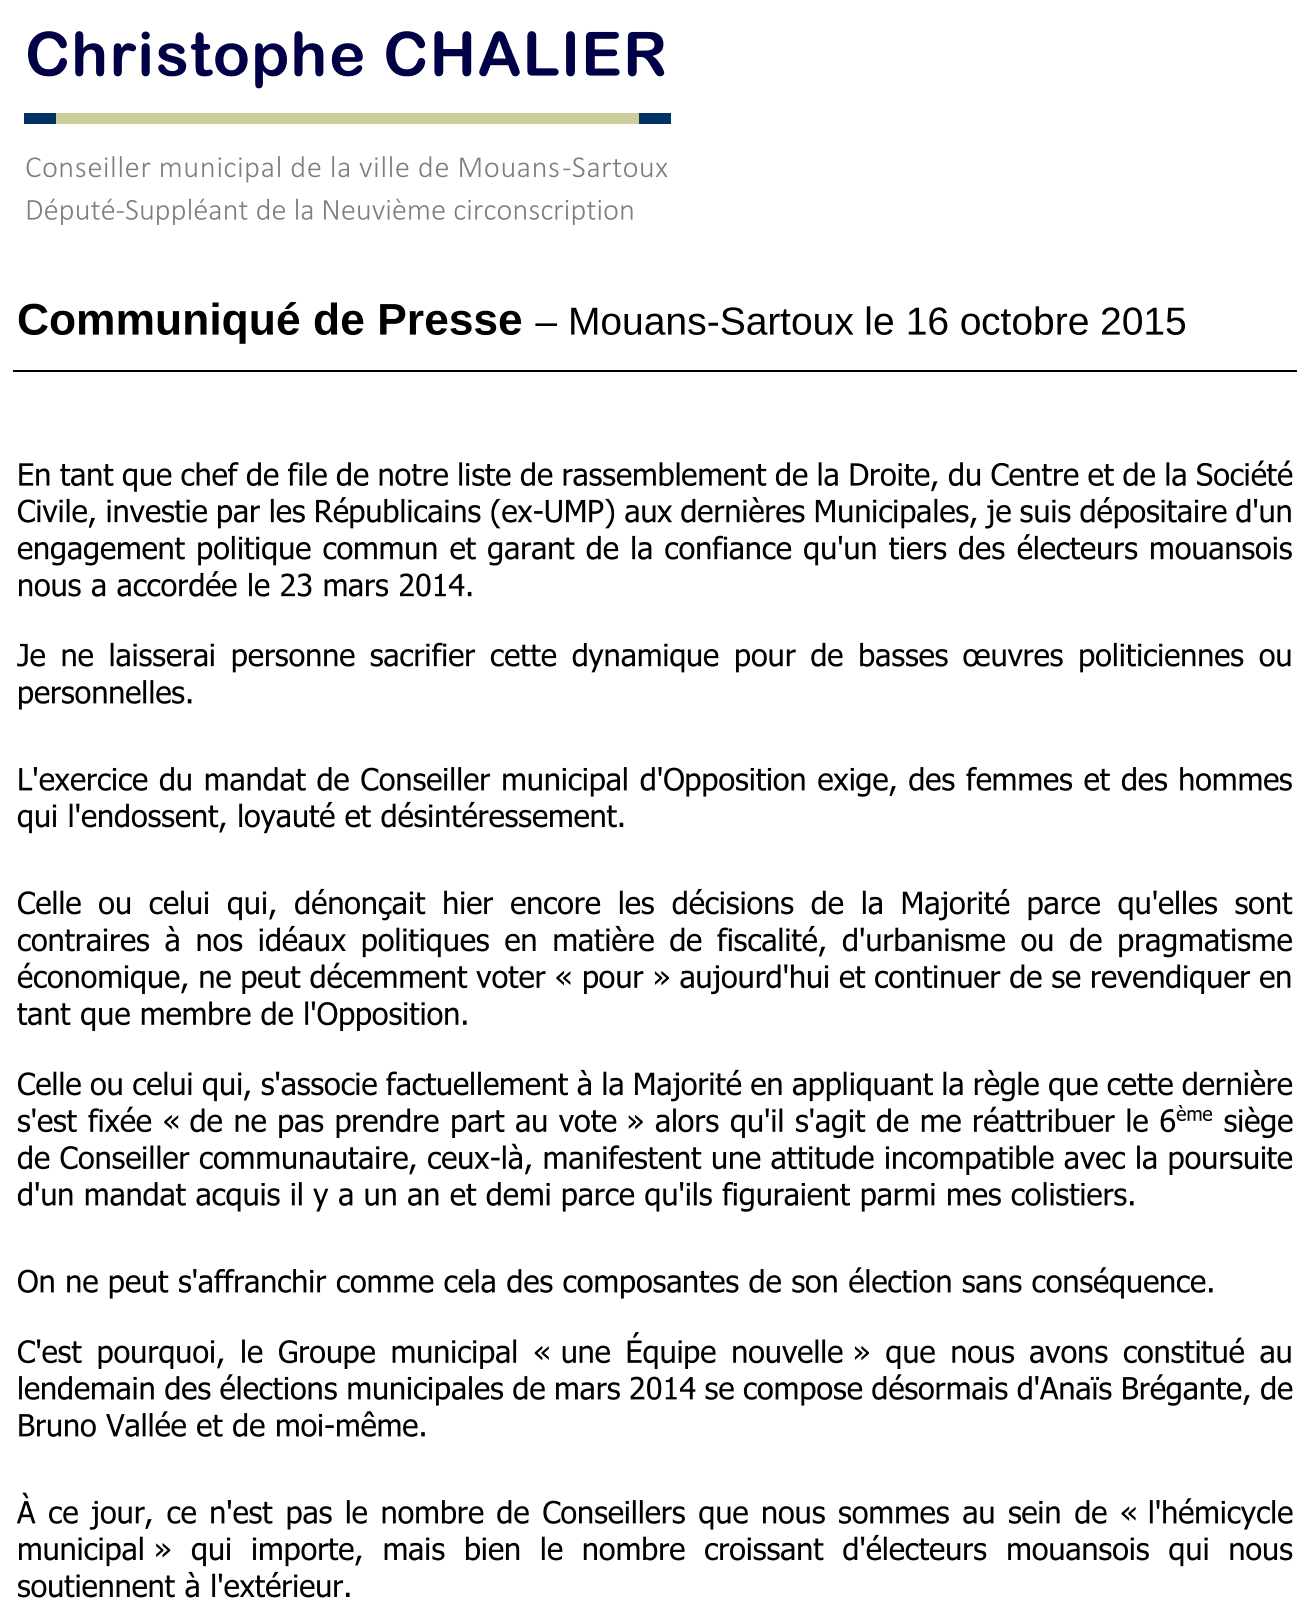 Communiqué de presse du 16 octobre 2015 - CCh.